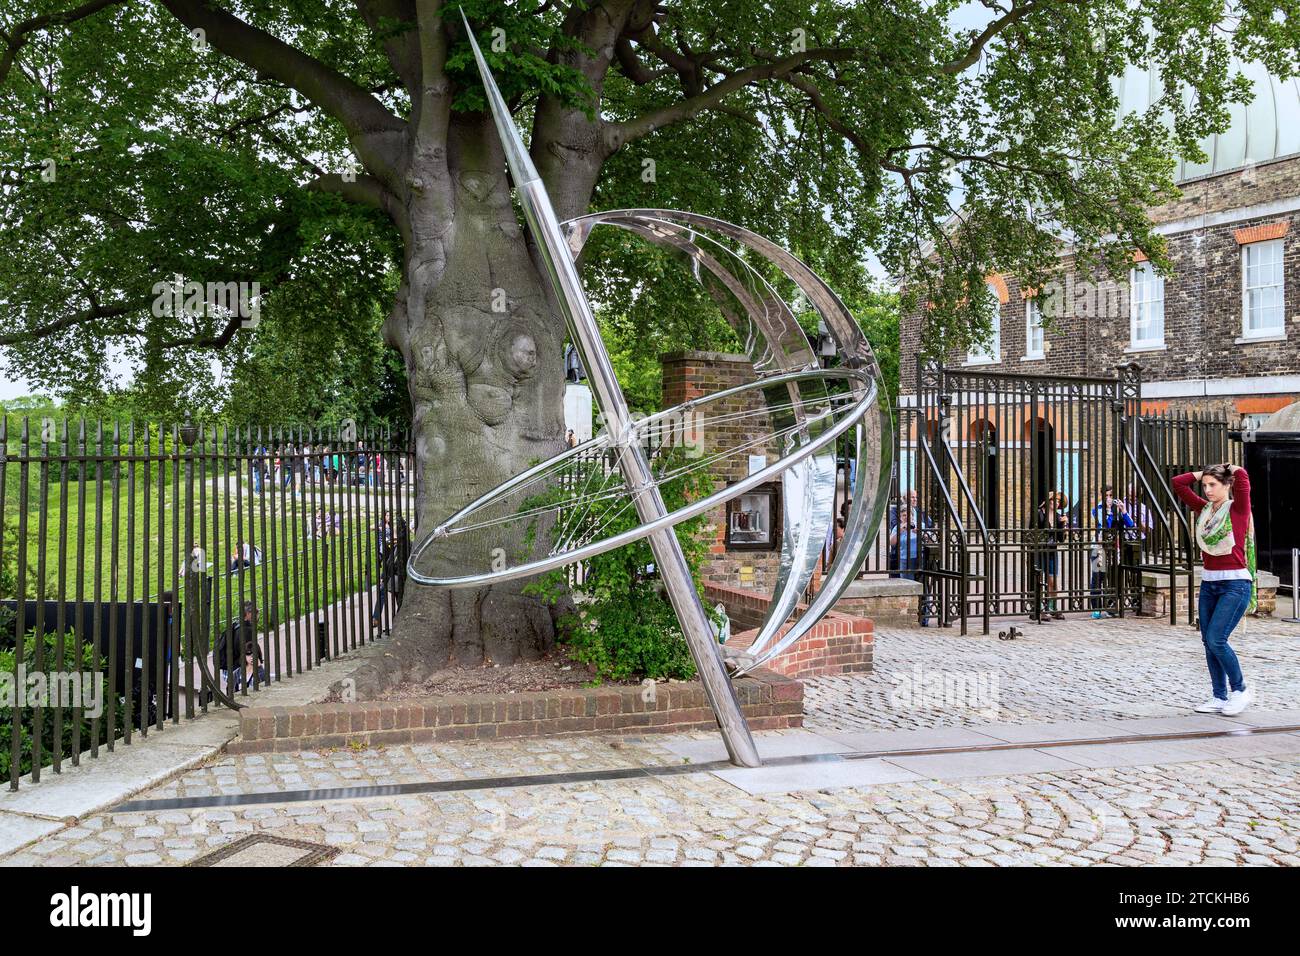 LONDON, GROSSBRITANNIEN - 20. MAI 2014: Ein unbekannter Besucher vor dem Prime Meridian am Greenwich Observatory. Stockfoto